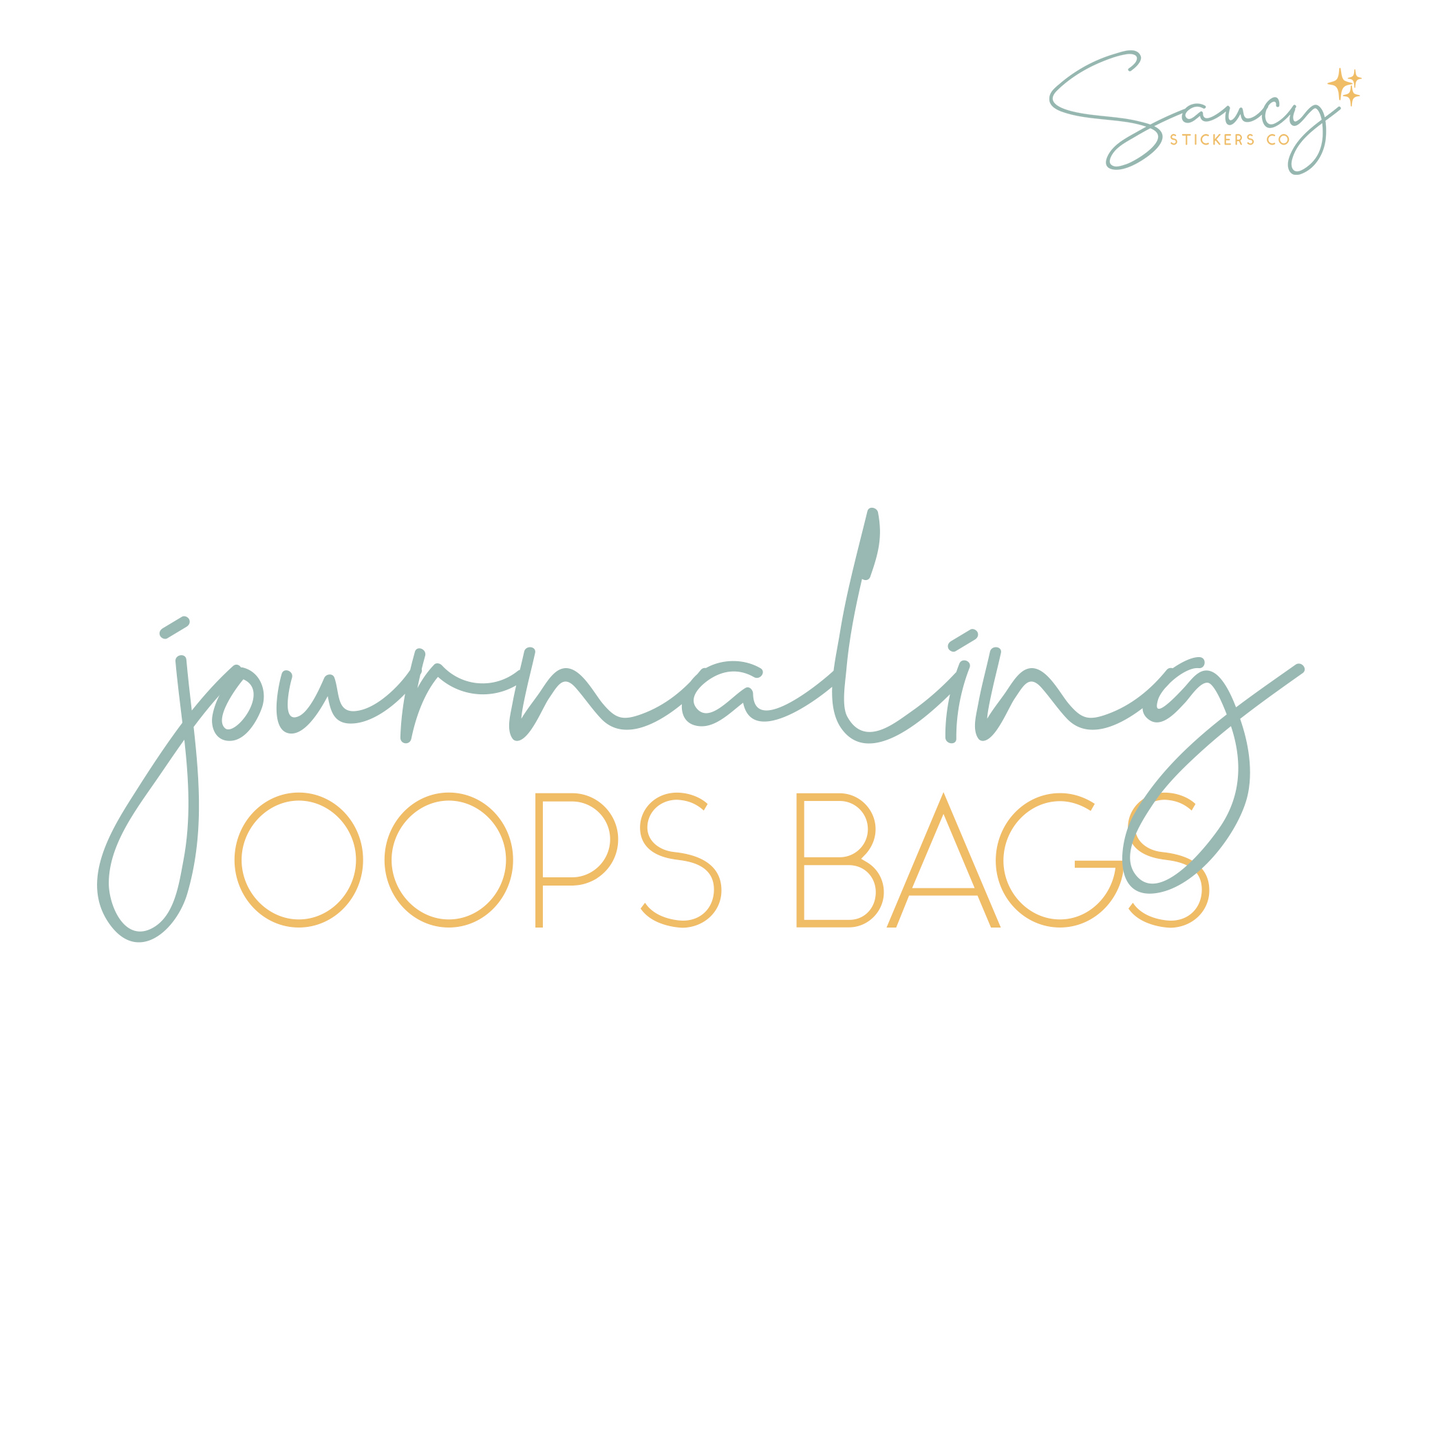 Journaling Oops Bag